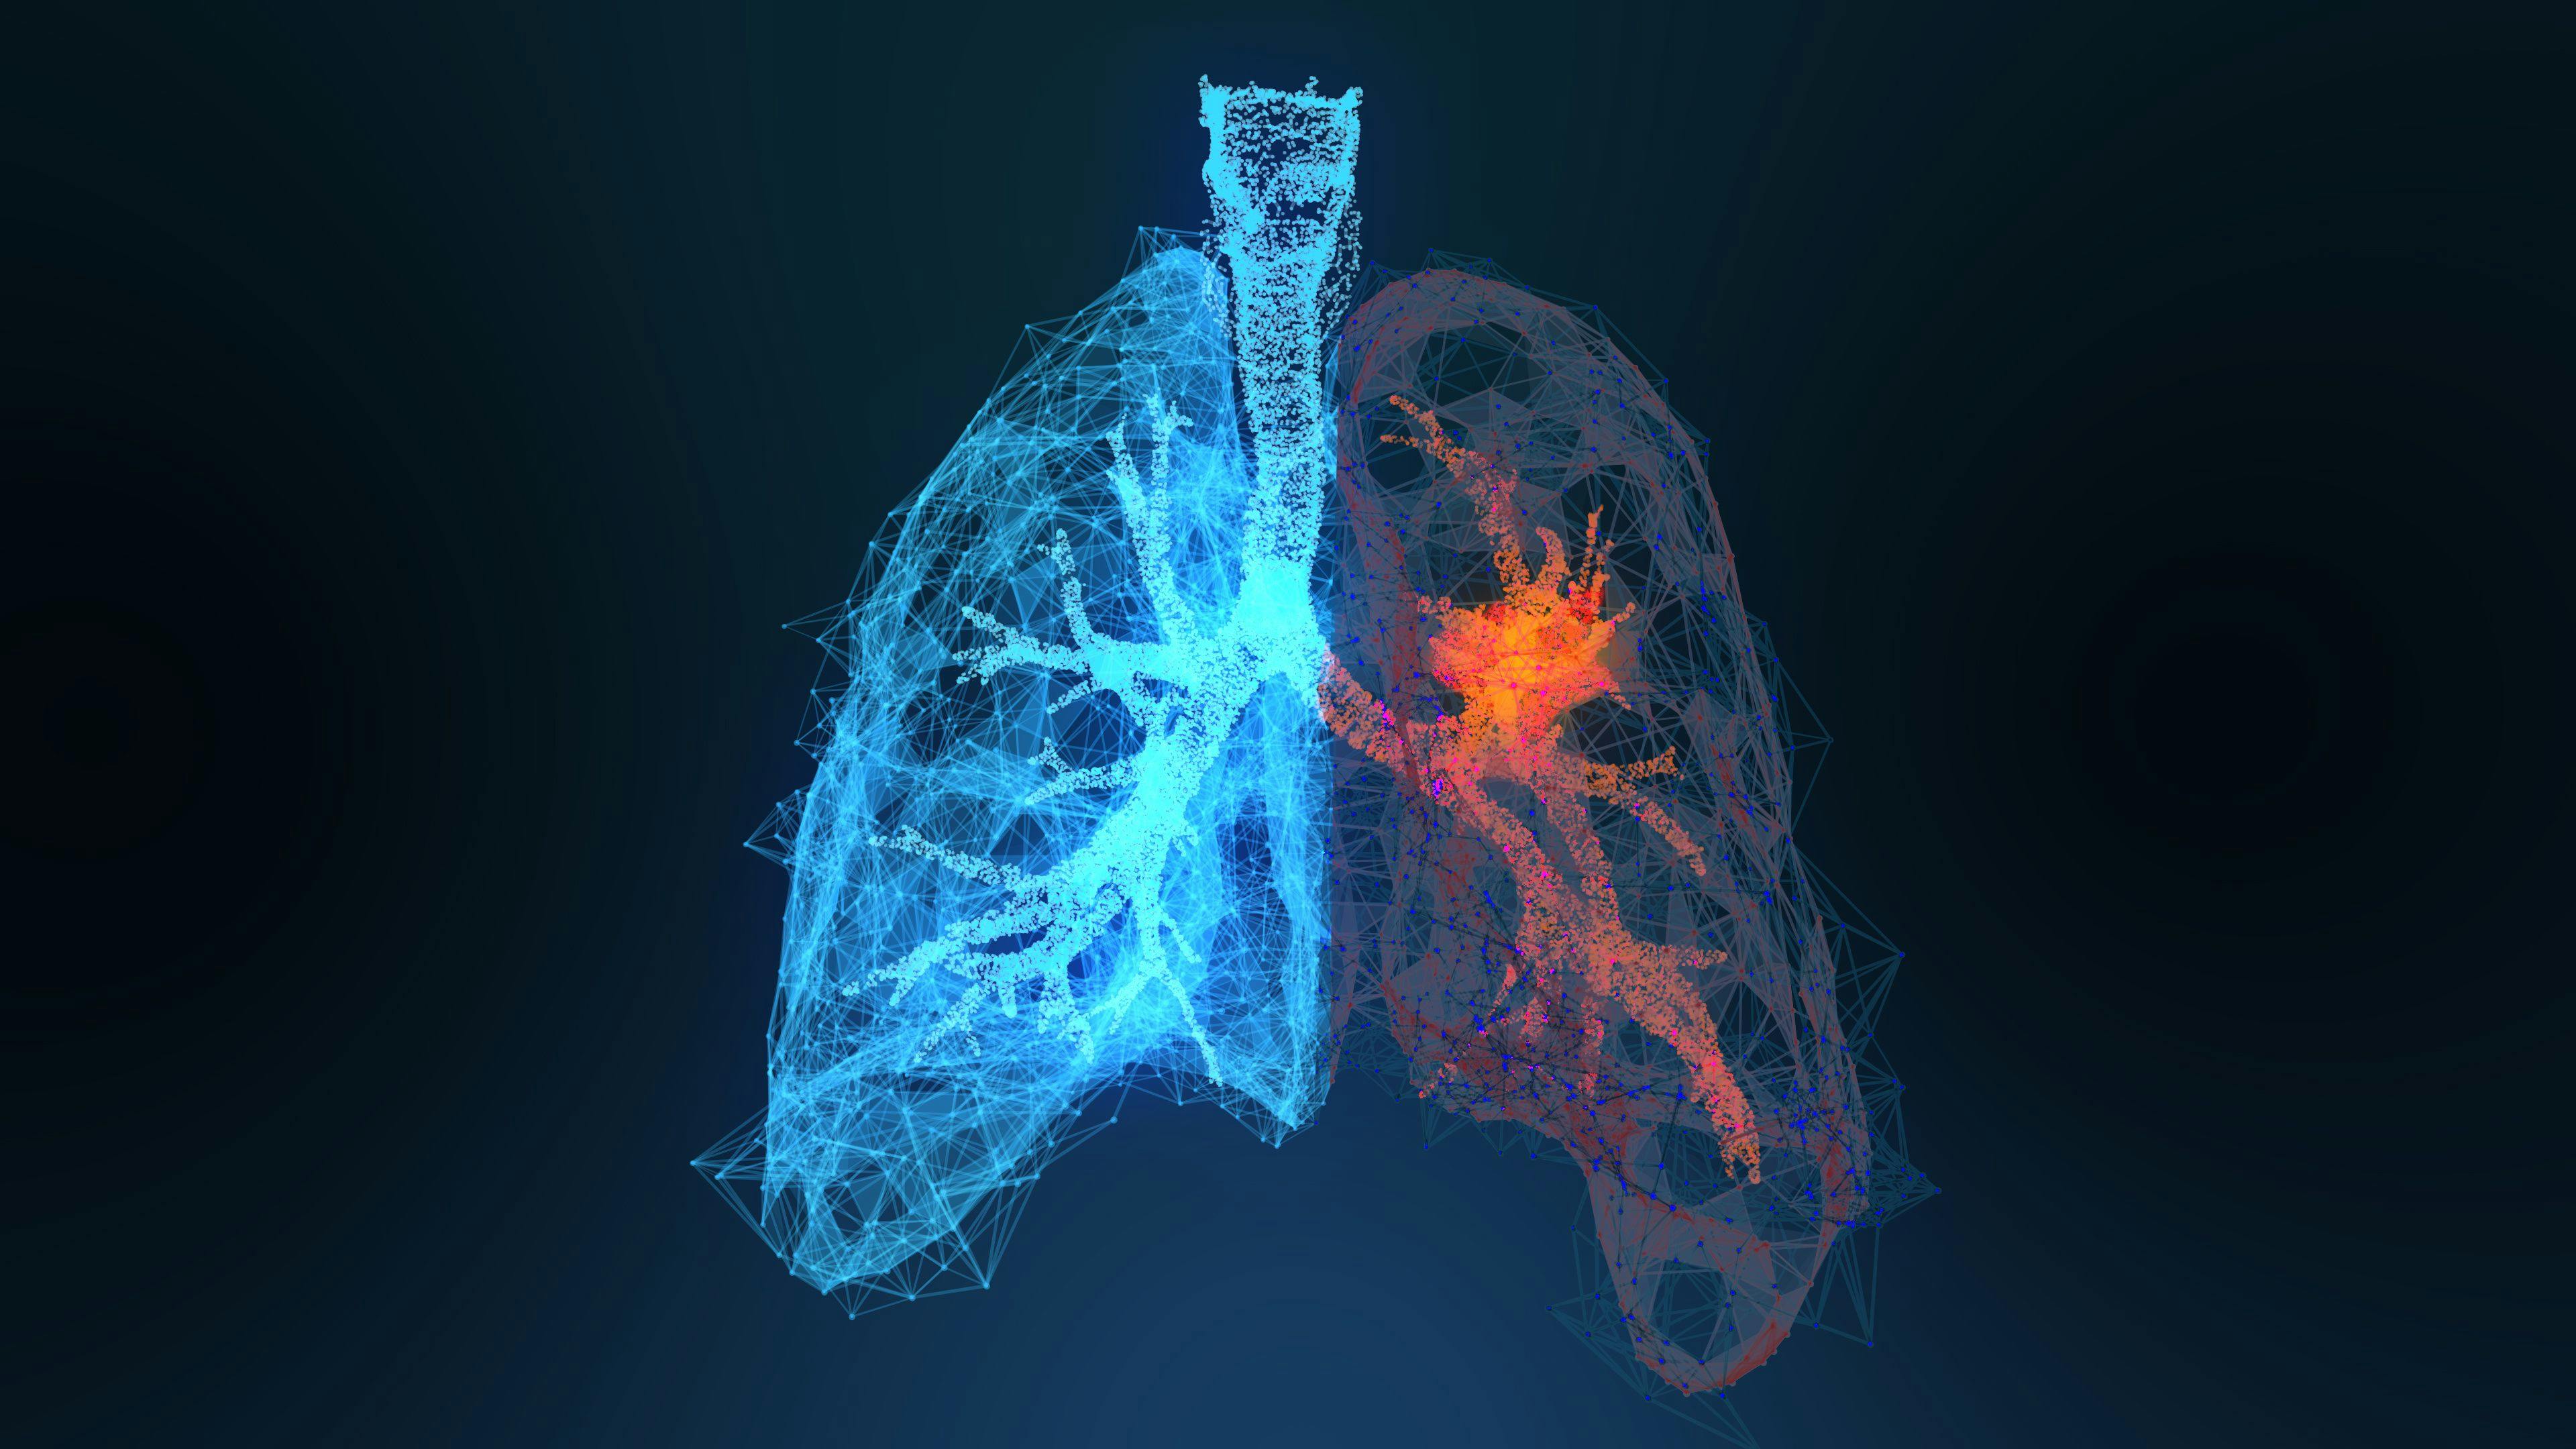 3d rendered illustration of lung cancer 3D illustration. Credit: appledesign - stock.adobe.com